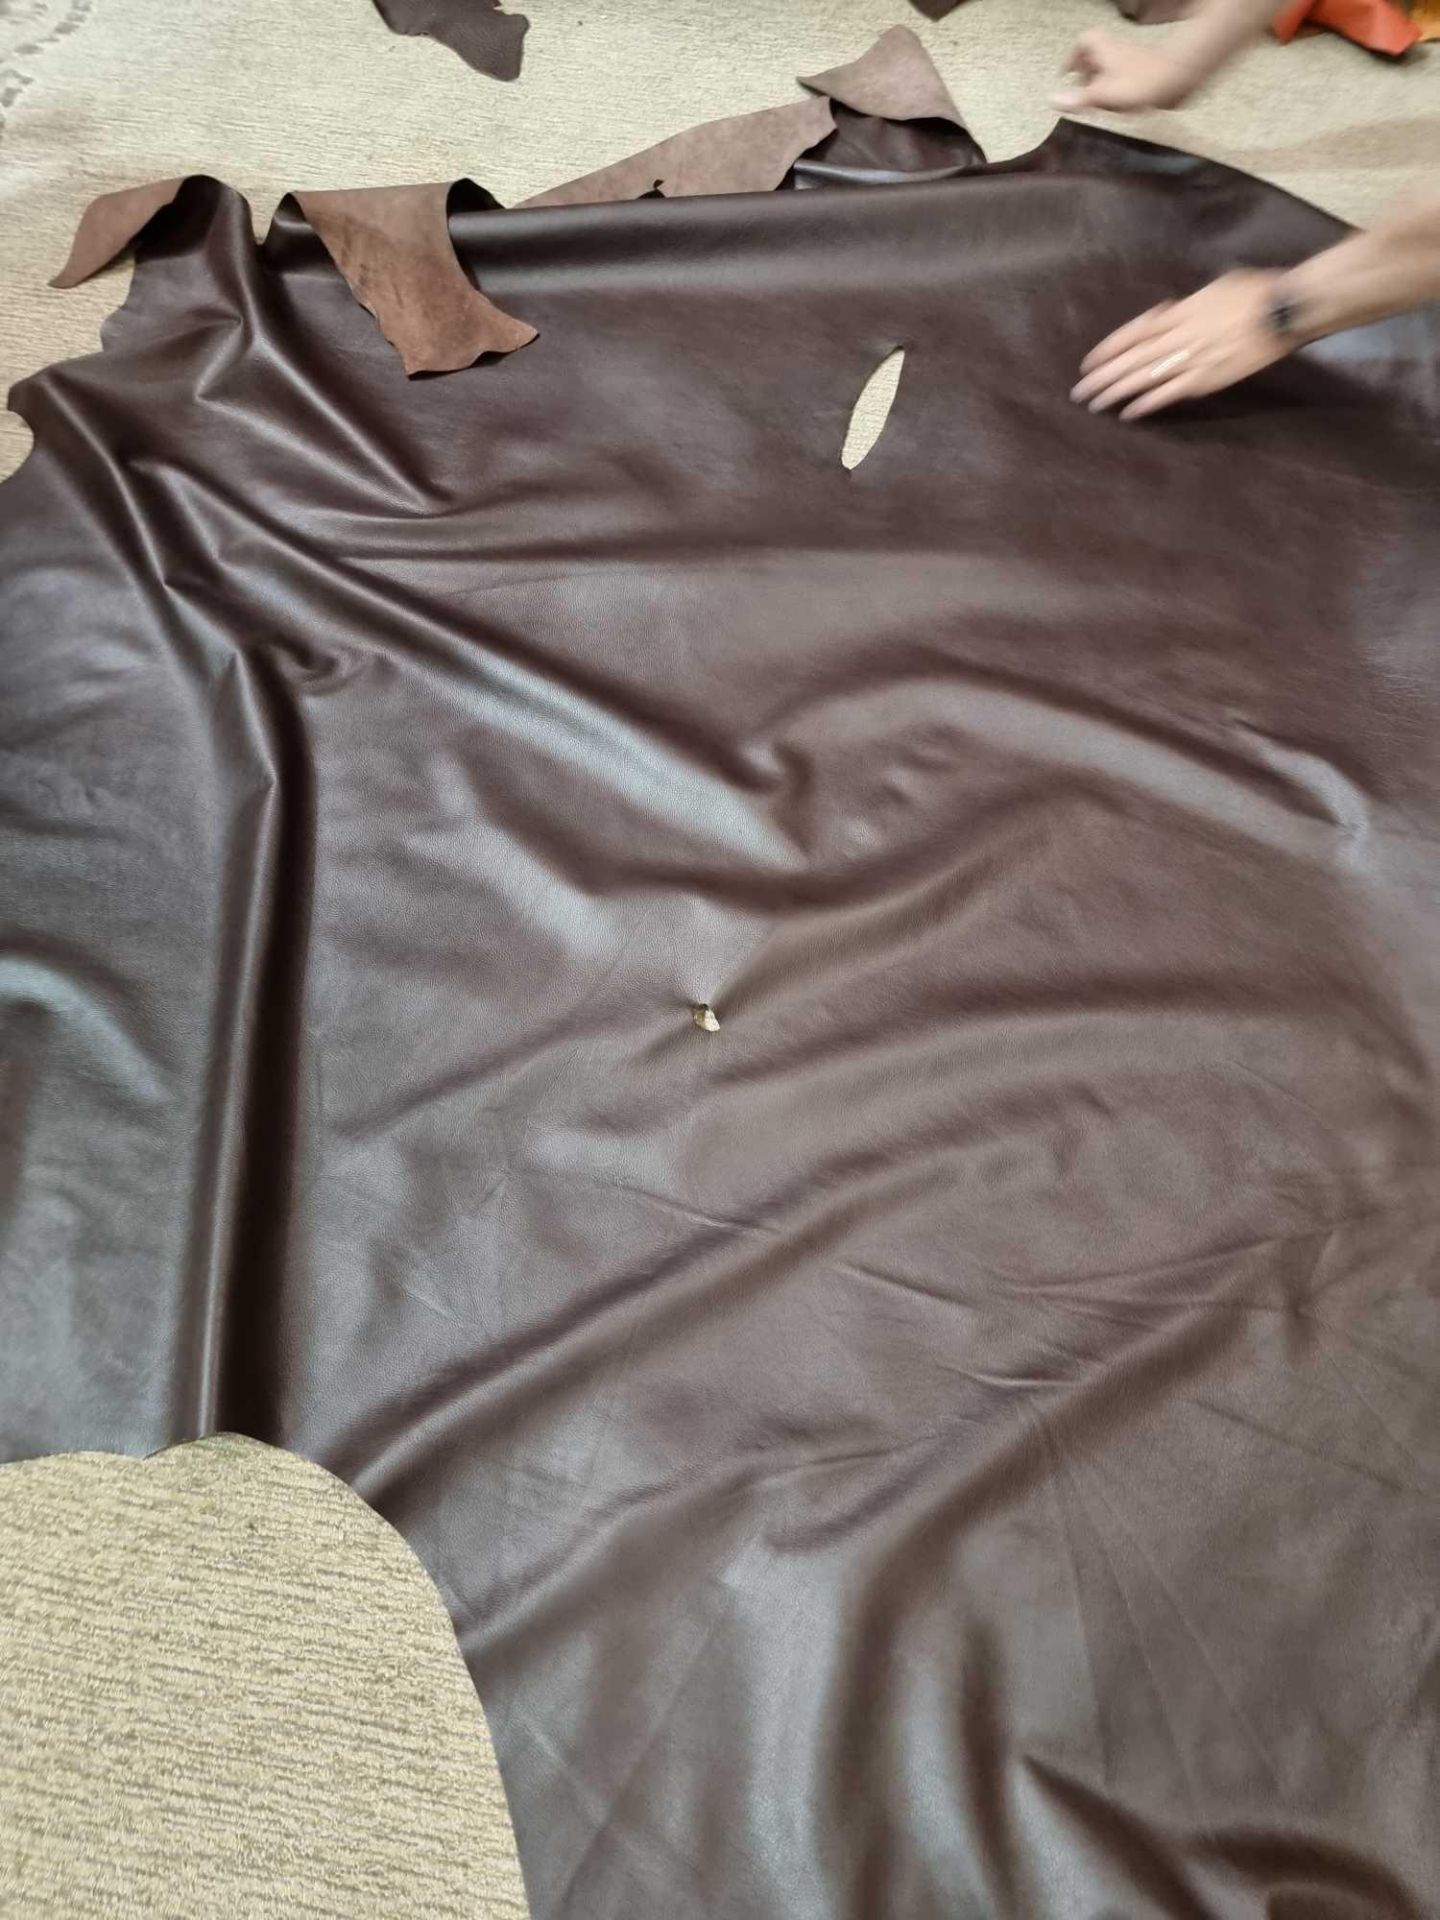 Chocolate Leather Hide approximately 2 72M2 1 7 x 1 6cm ( Hide No,138) - Bild 2 aus 2